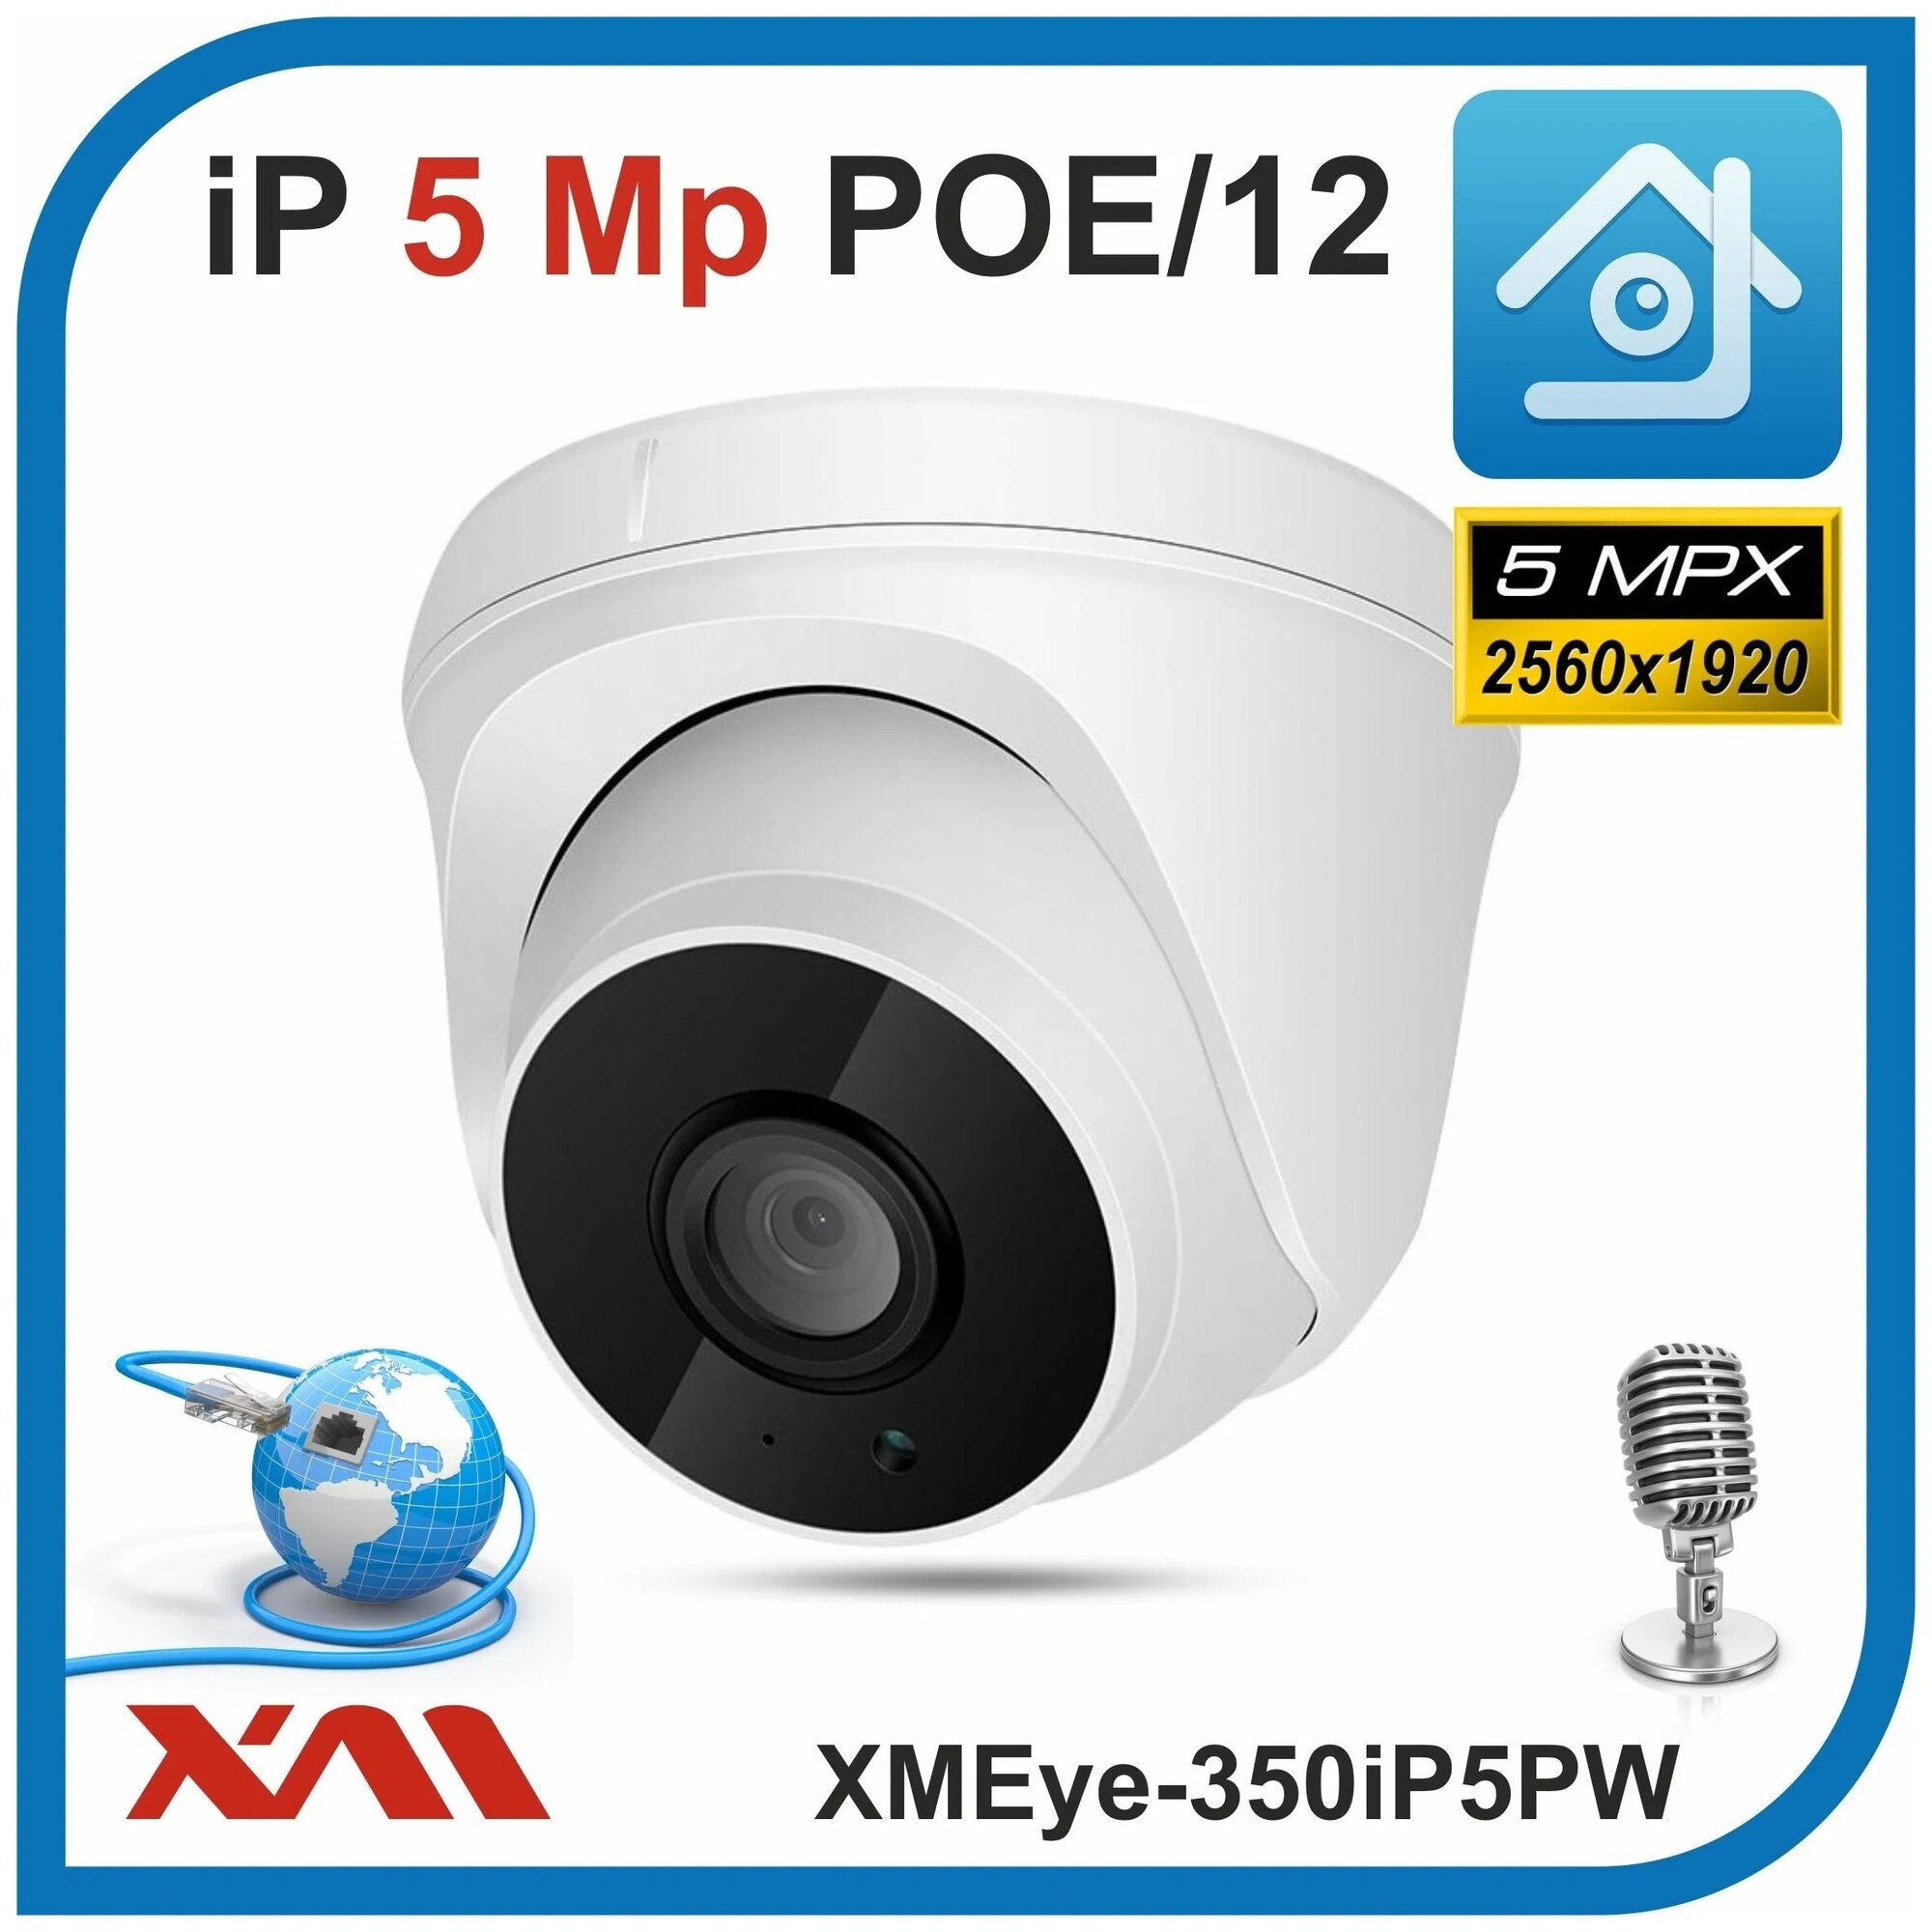 Камера видеонаблюдения купольная с микрофоном IP, 5Mpx, 1920P, XMEye-350iP5PW-2.8. POE/12 (Пластик/Белая) - фотография № 2